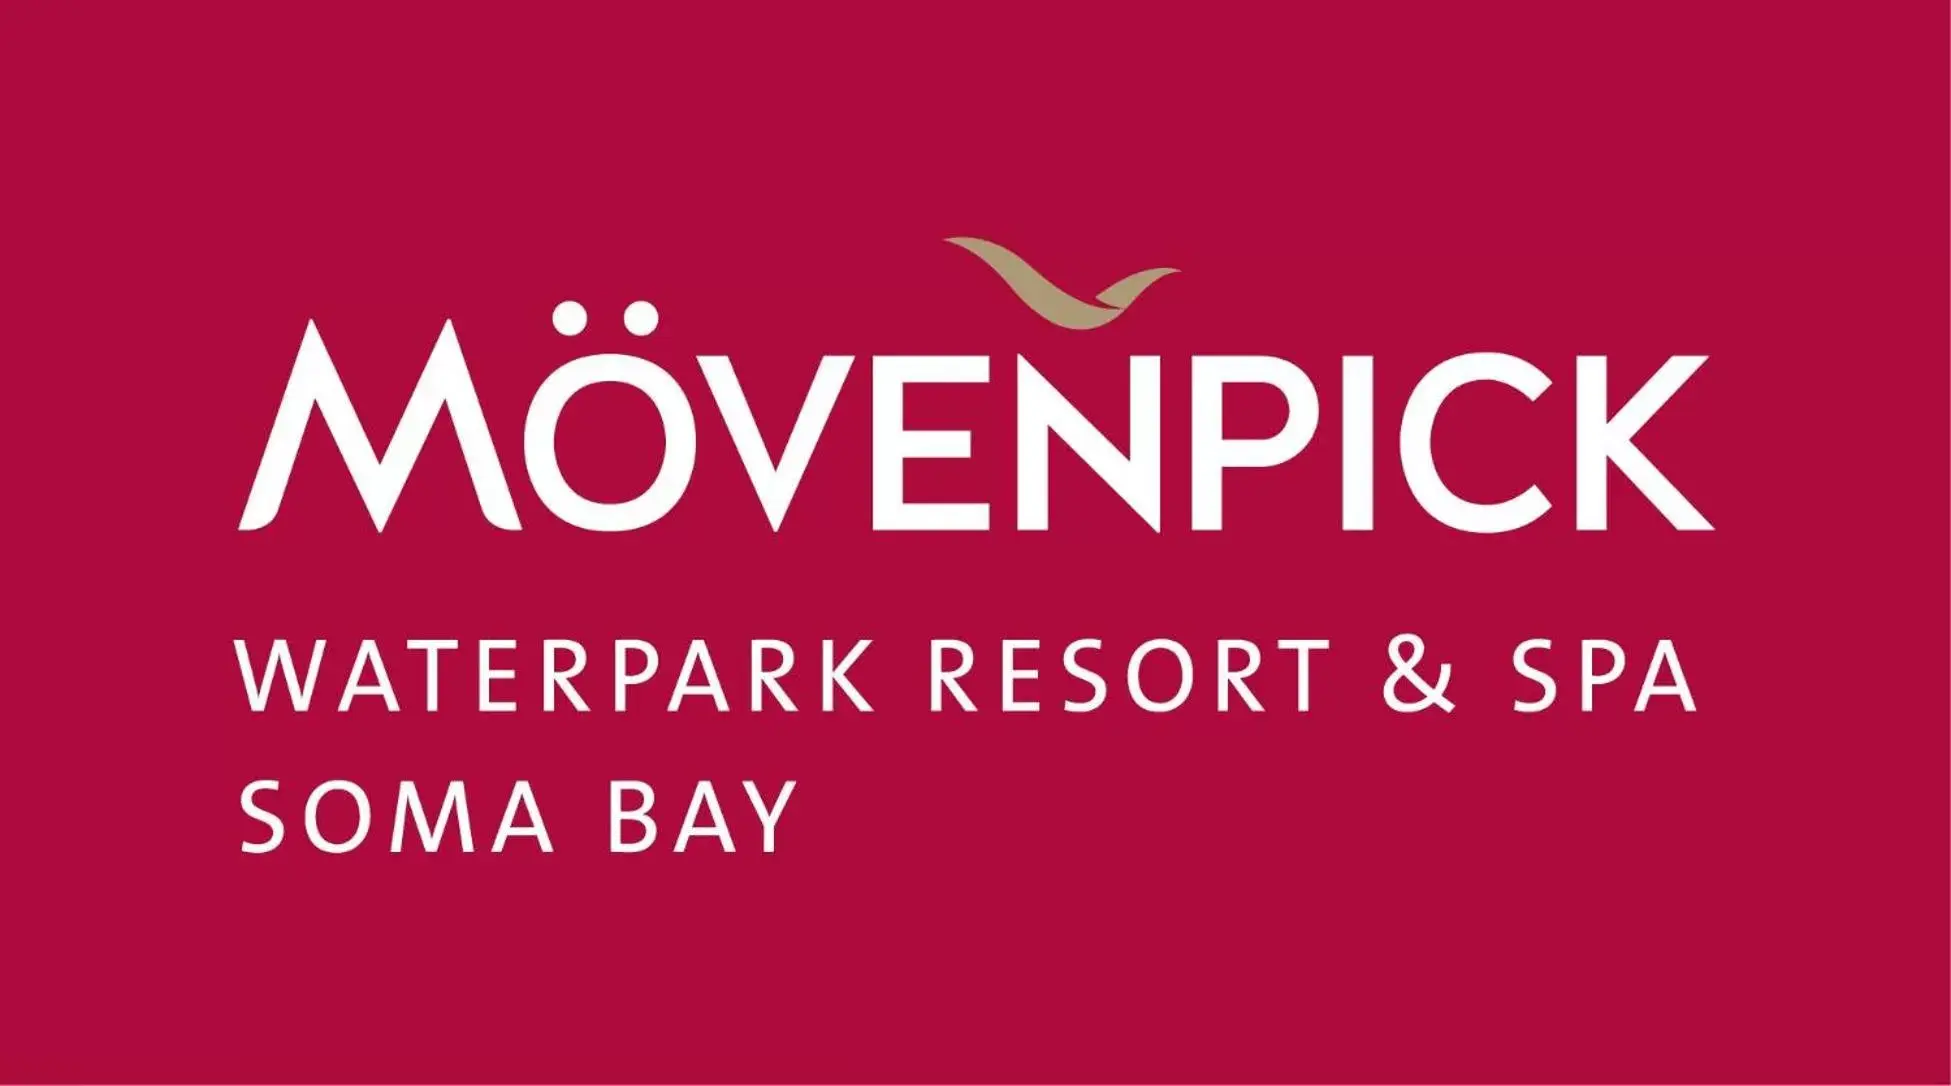 Property logo or sign in Movenpick Waterpark Resort & Spa Soma Bay